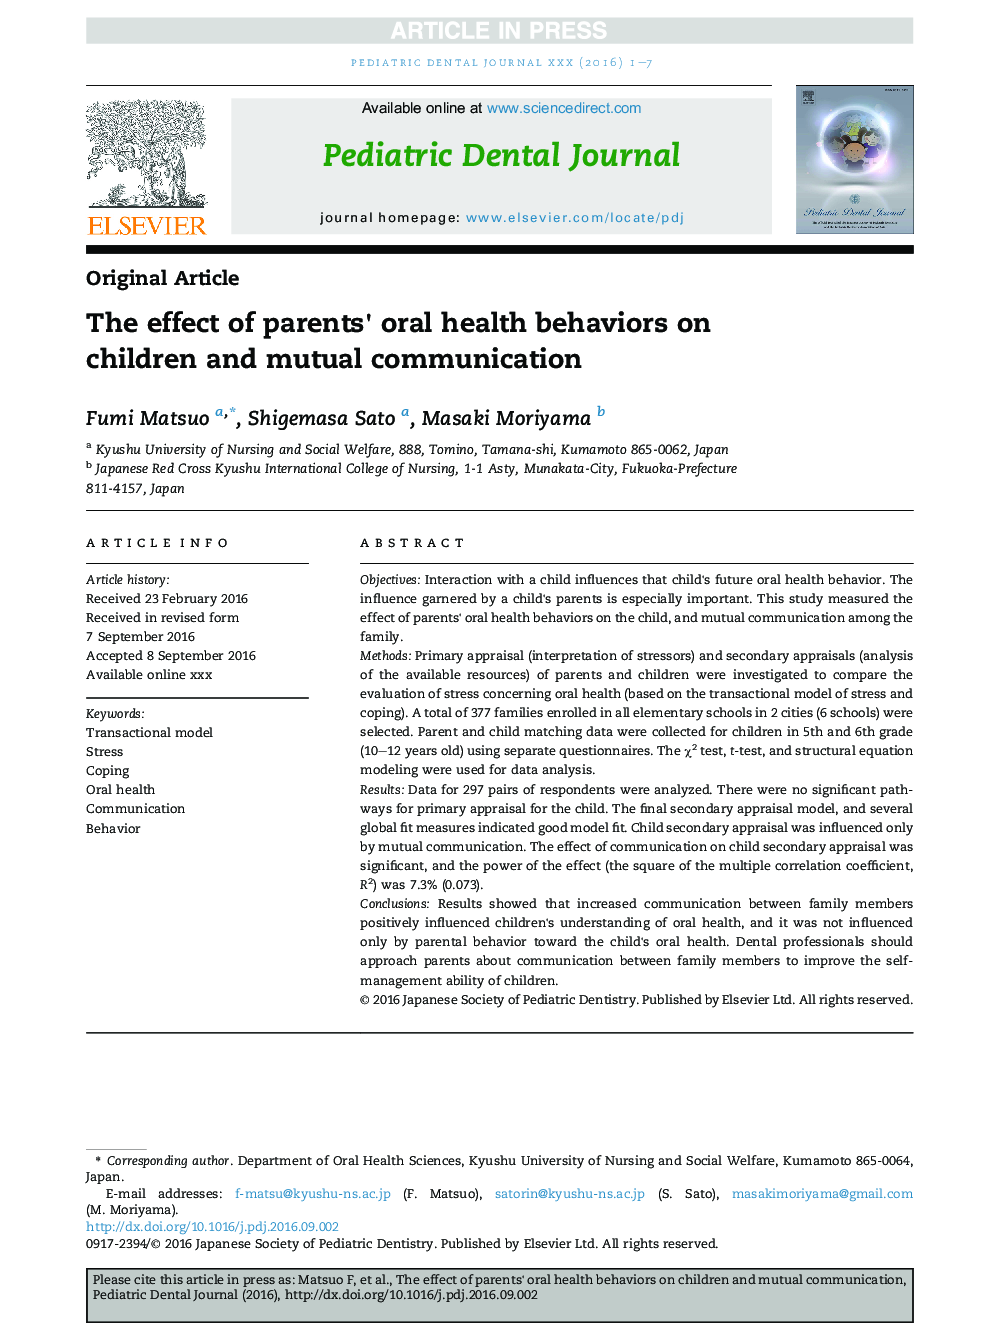 تأثیر رفتارهای بهداشت دهان و دندان والدین بر روی کودکان و ارتباطات متقابل 